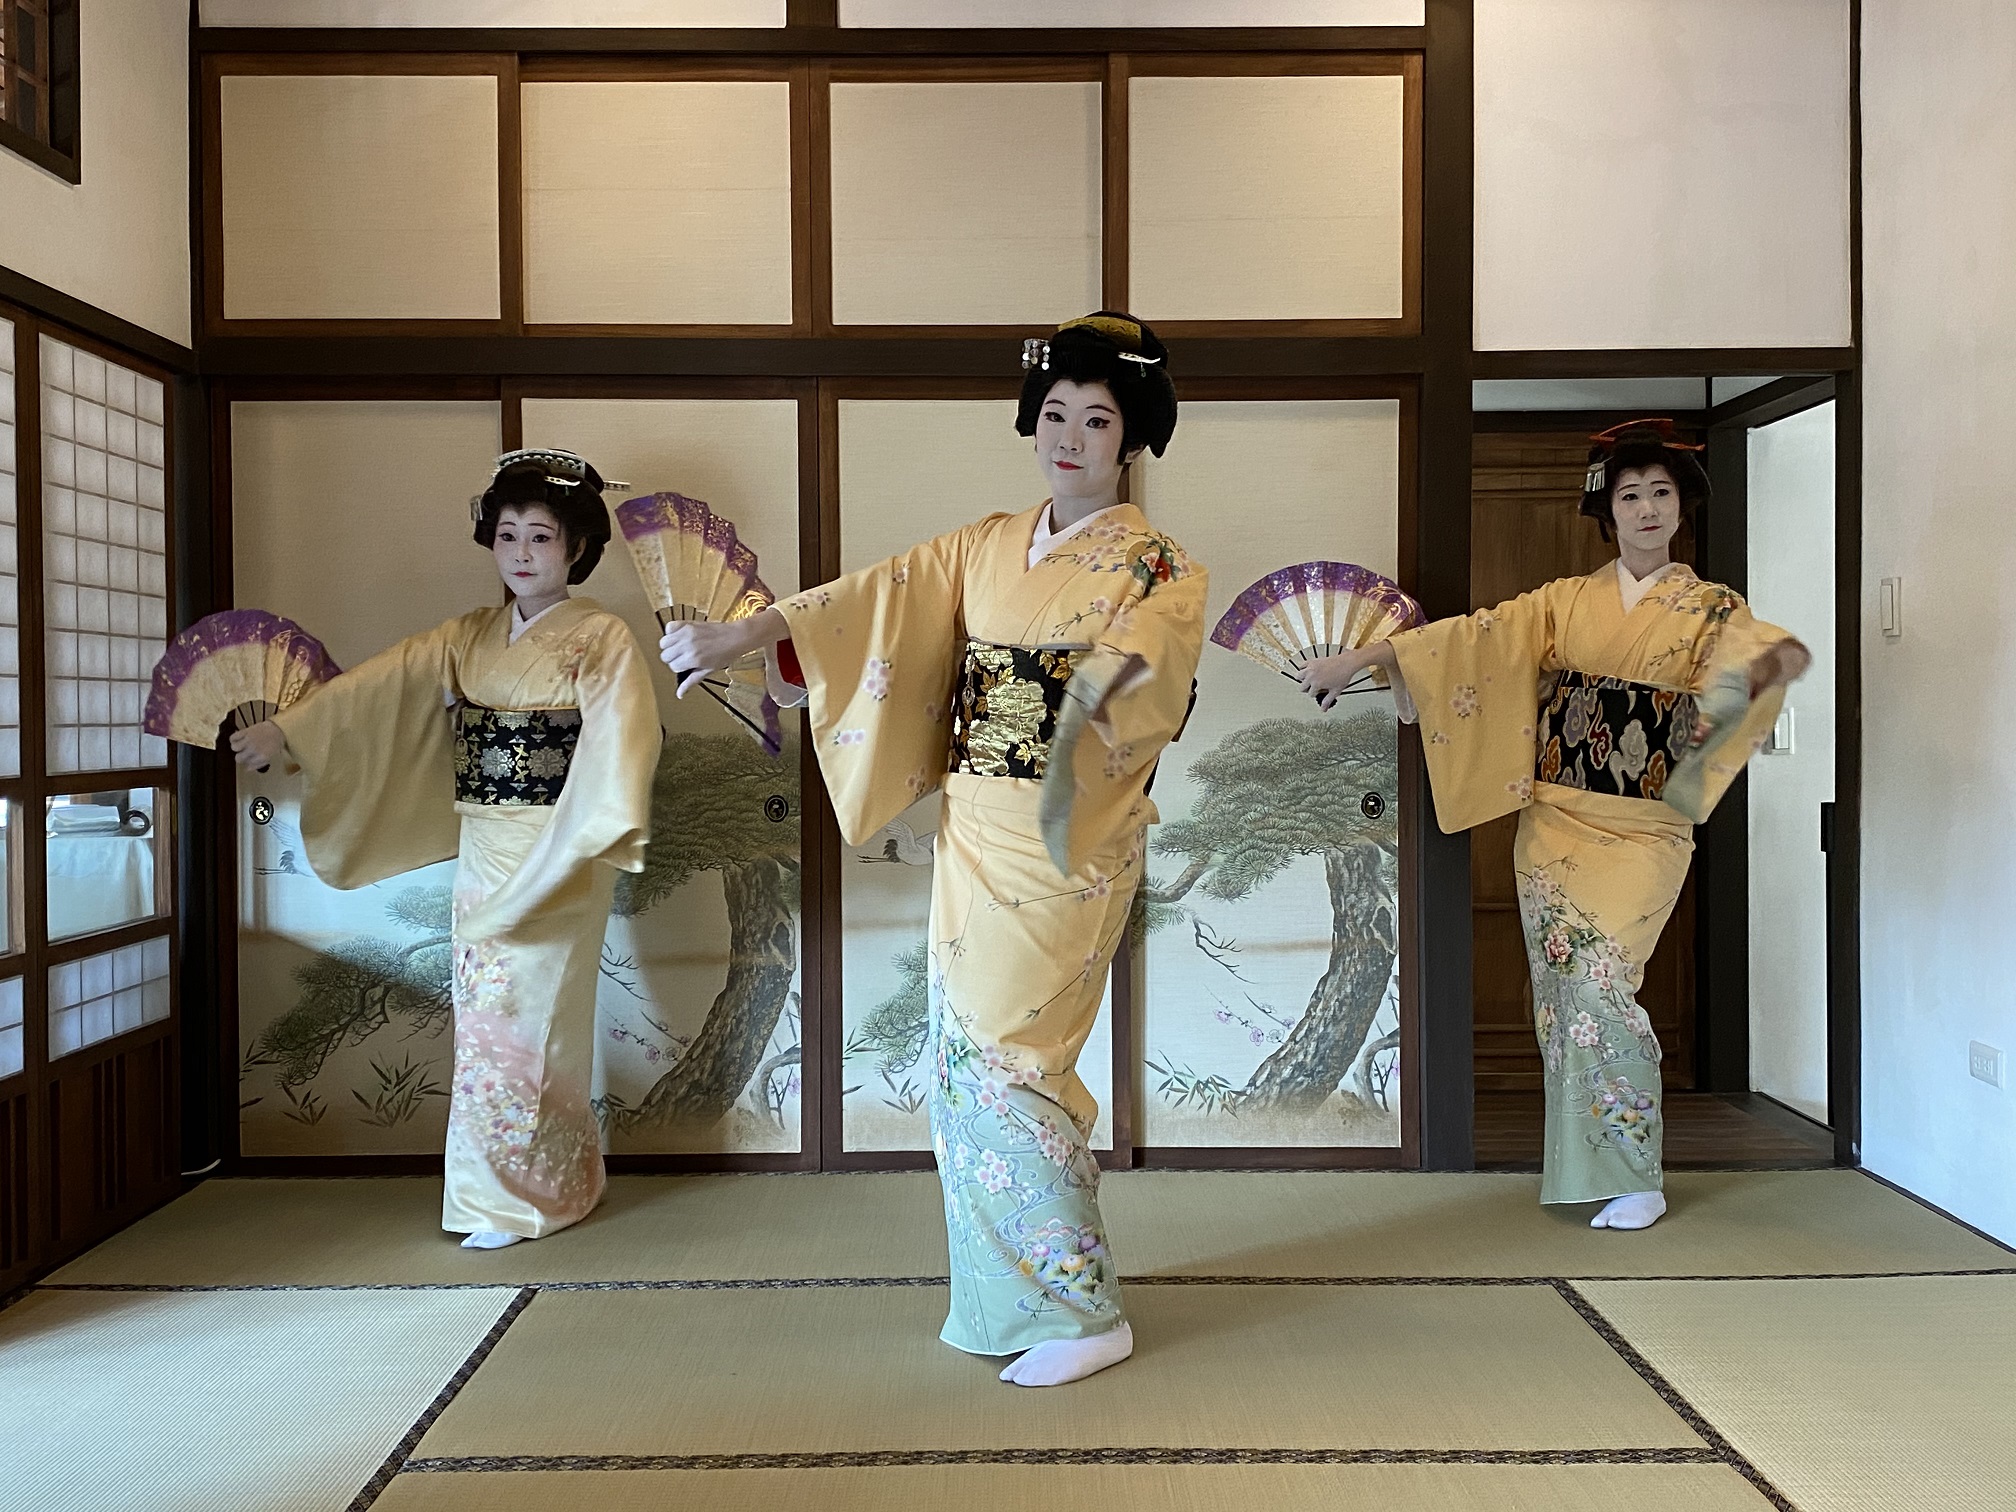 典禮由「千鶴流」日本舞老師千鶴美扇親自帶領舞者演出揭開序幕，精彩的舞蹈表演令人如癡如醉，彷彿穿梭時空回到當時。